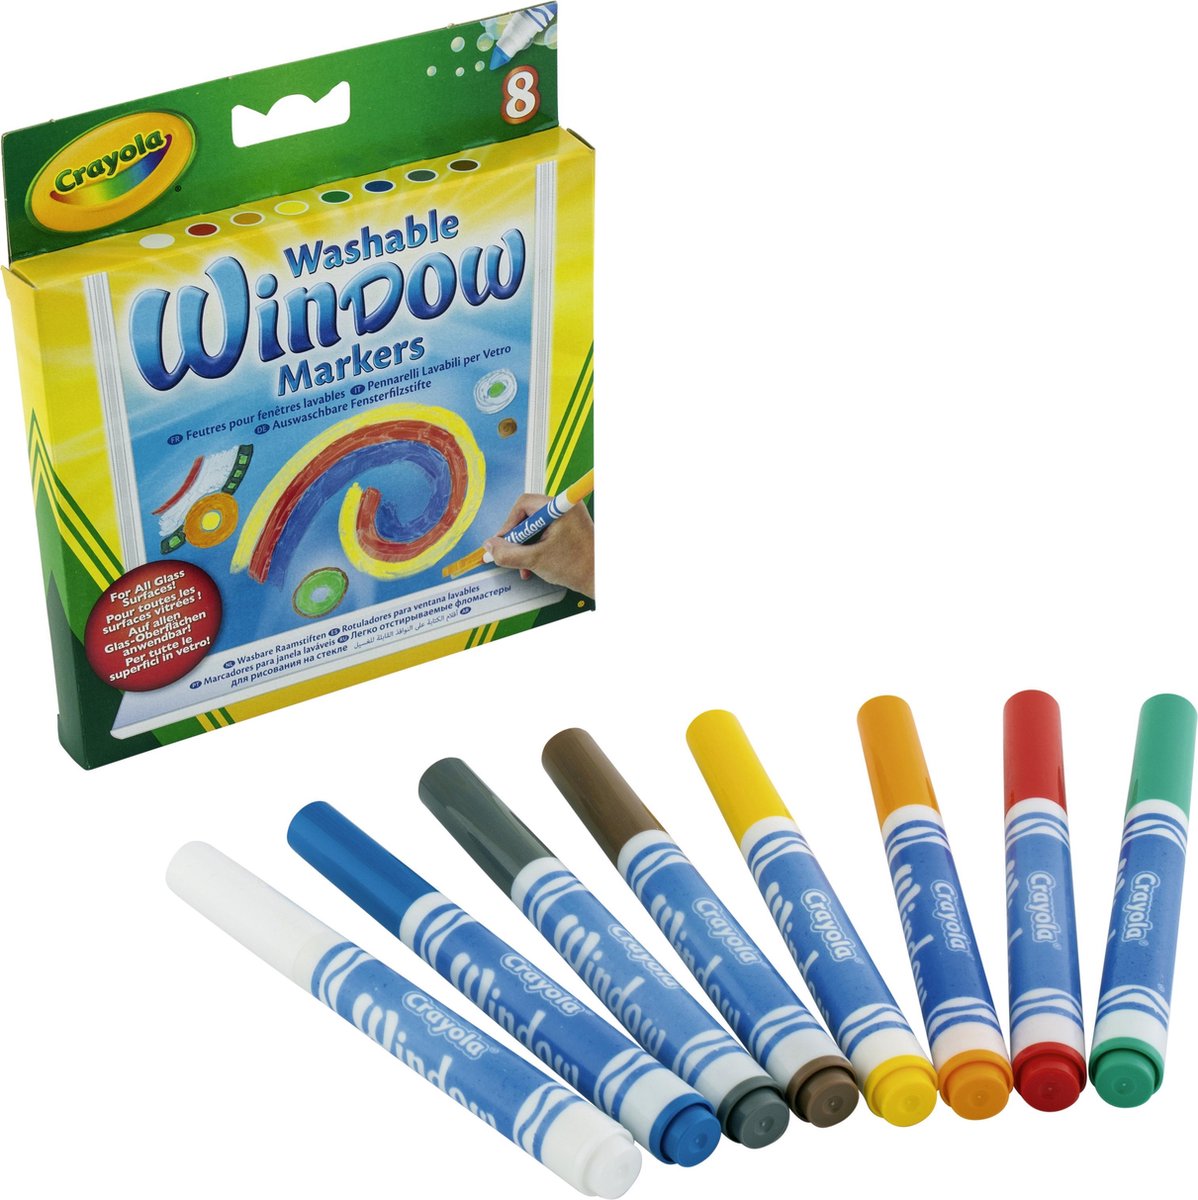 Tijdreeksen Elasticiteit Woordvoerder Crayola - 8 Wasbare Raamstiften - Tekenen op Gespiegelde Oppervlakken |  bol.com